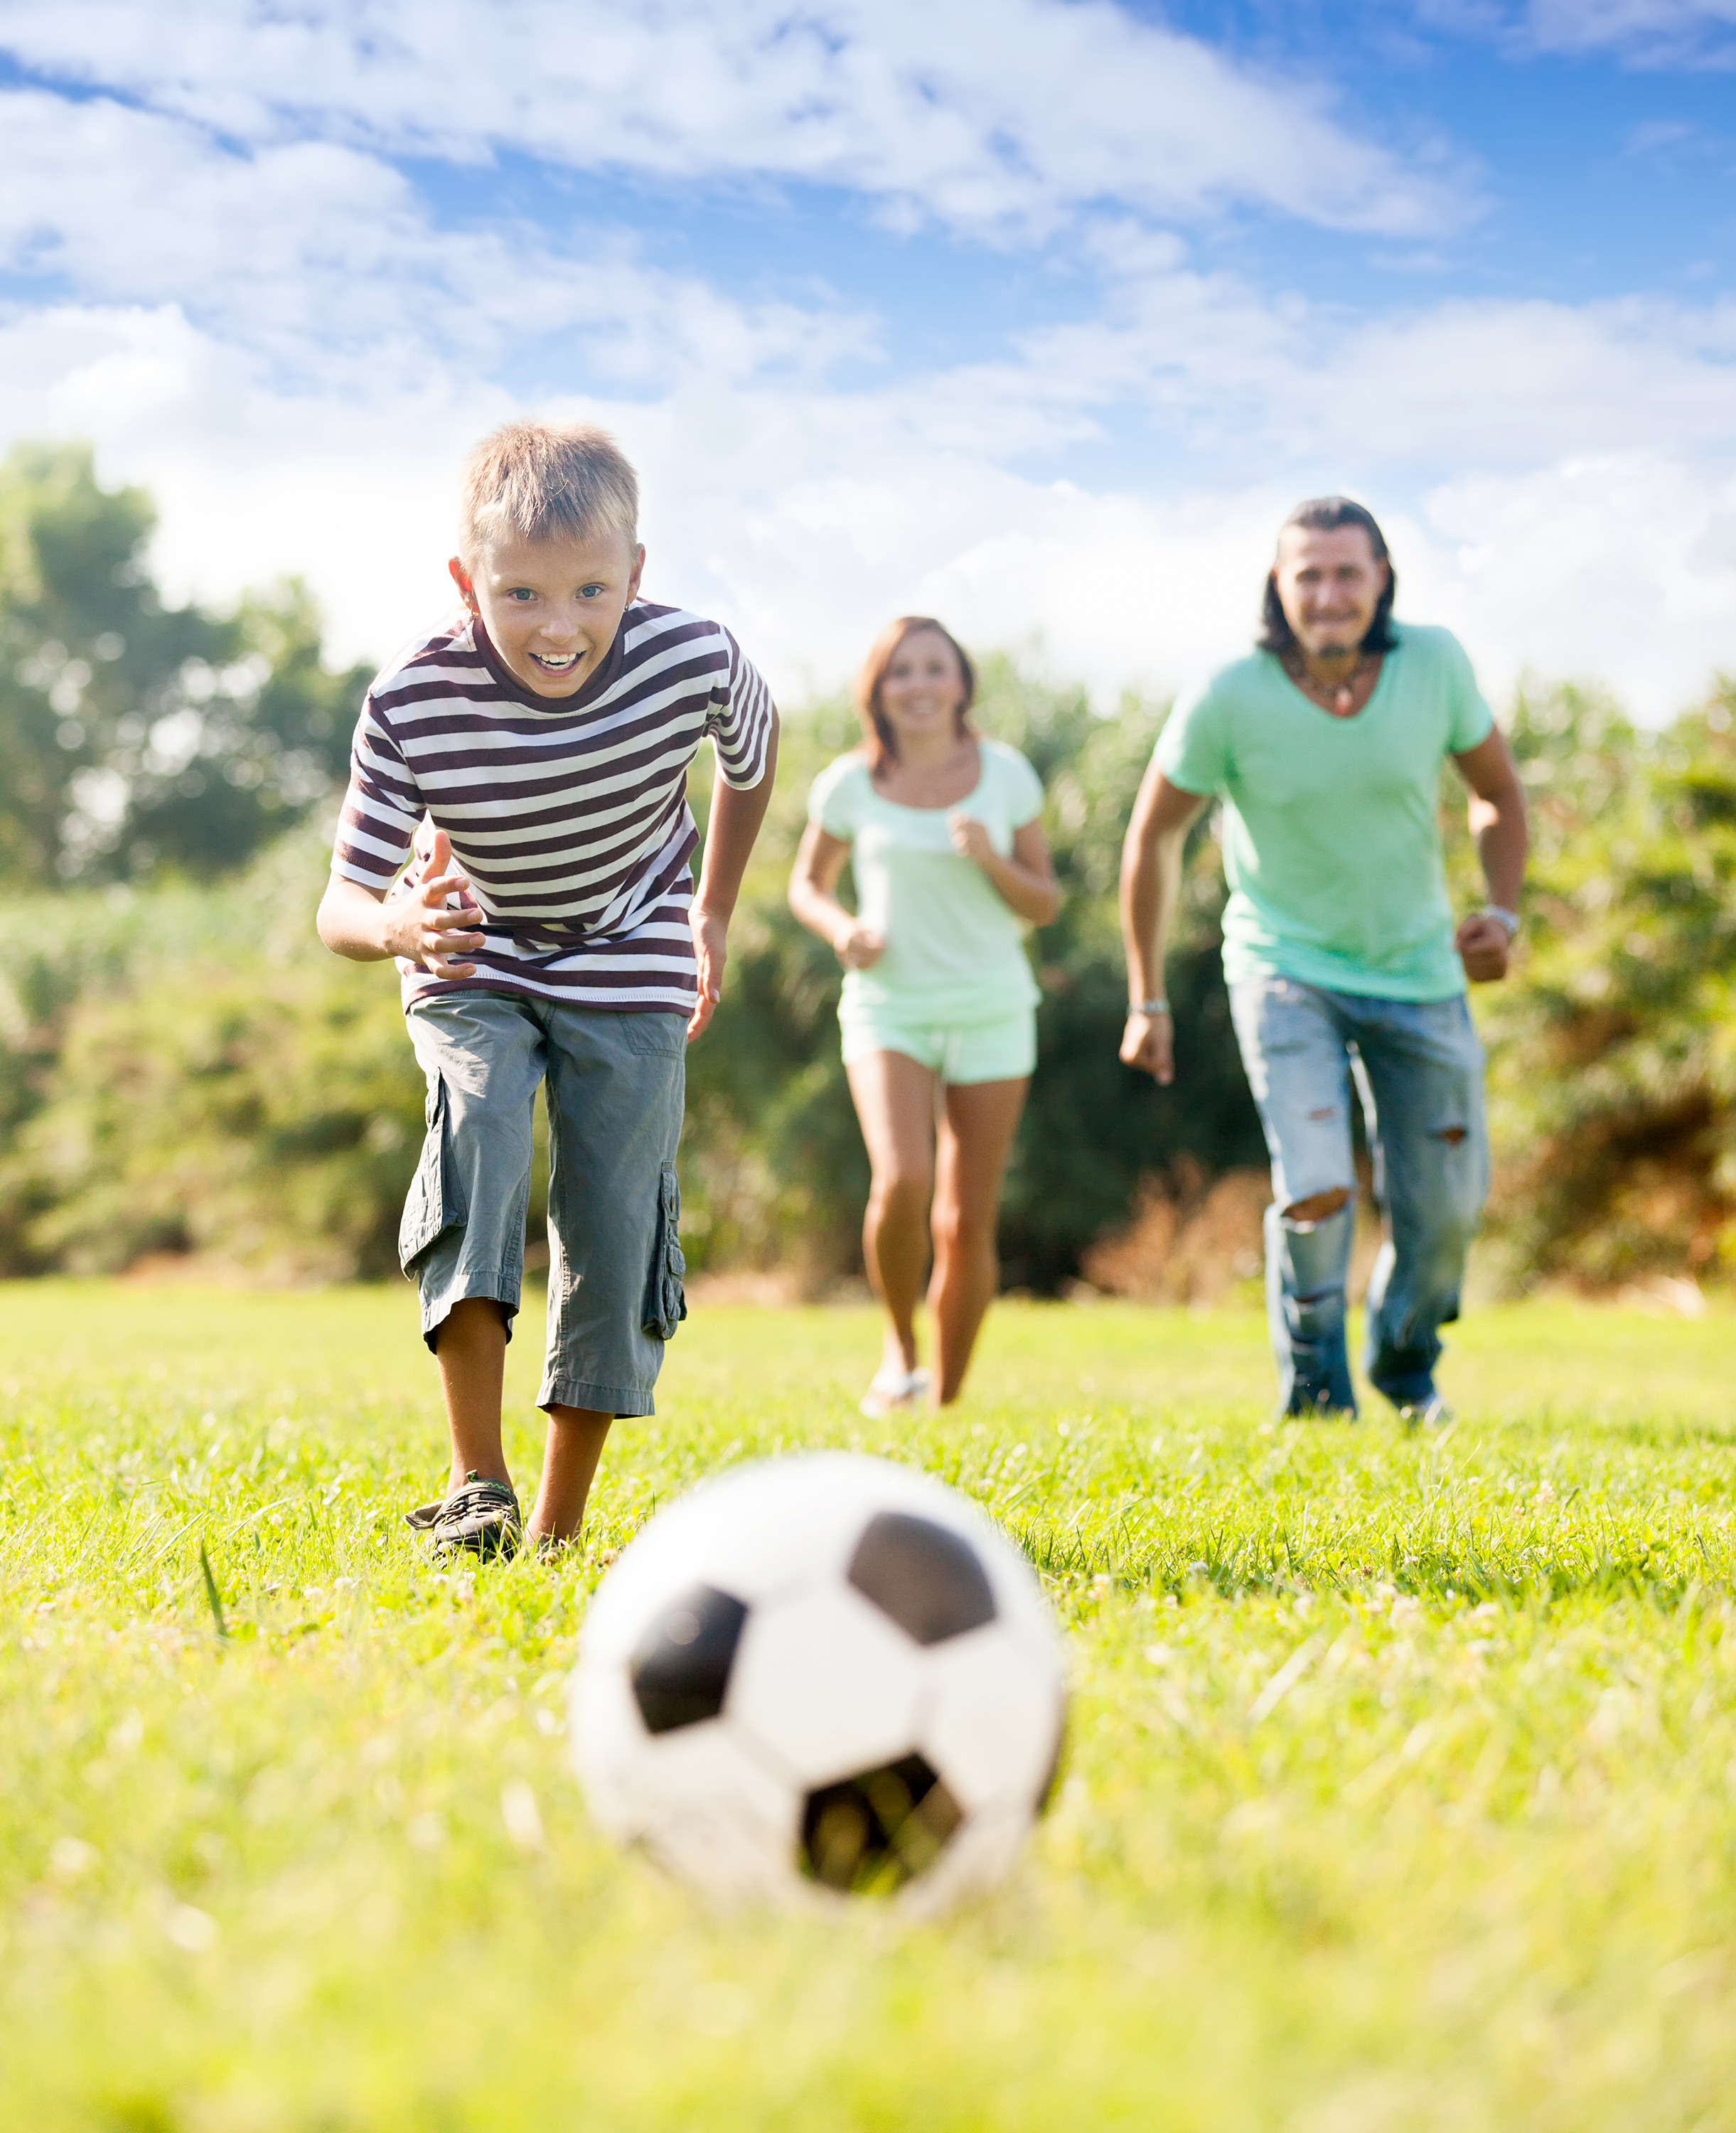 Папа играет в футбол. Футбол на природе. Спортивные и подвижные игры. Спортивная семья. Дети футбол природа.